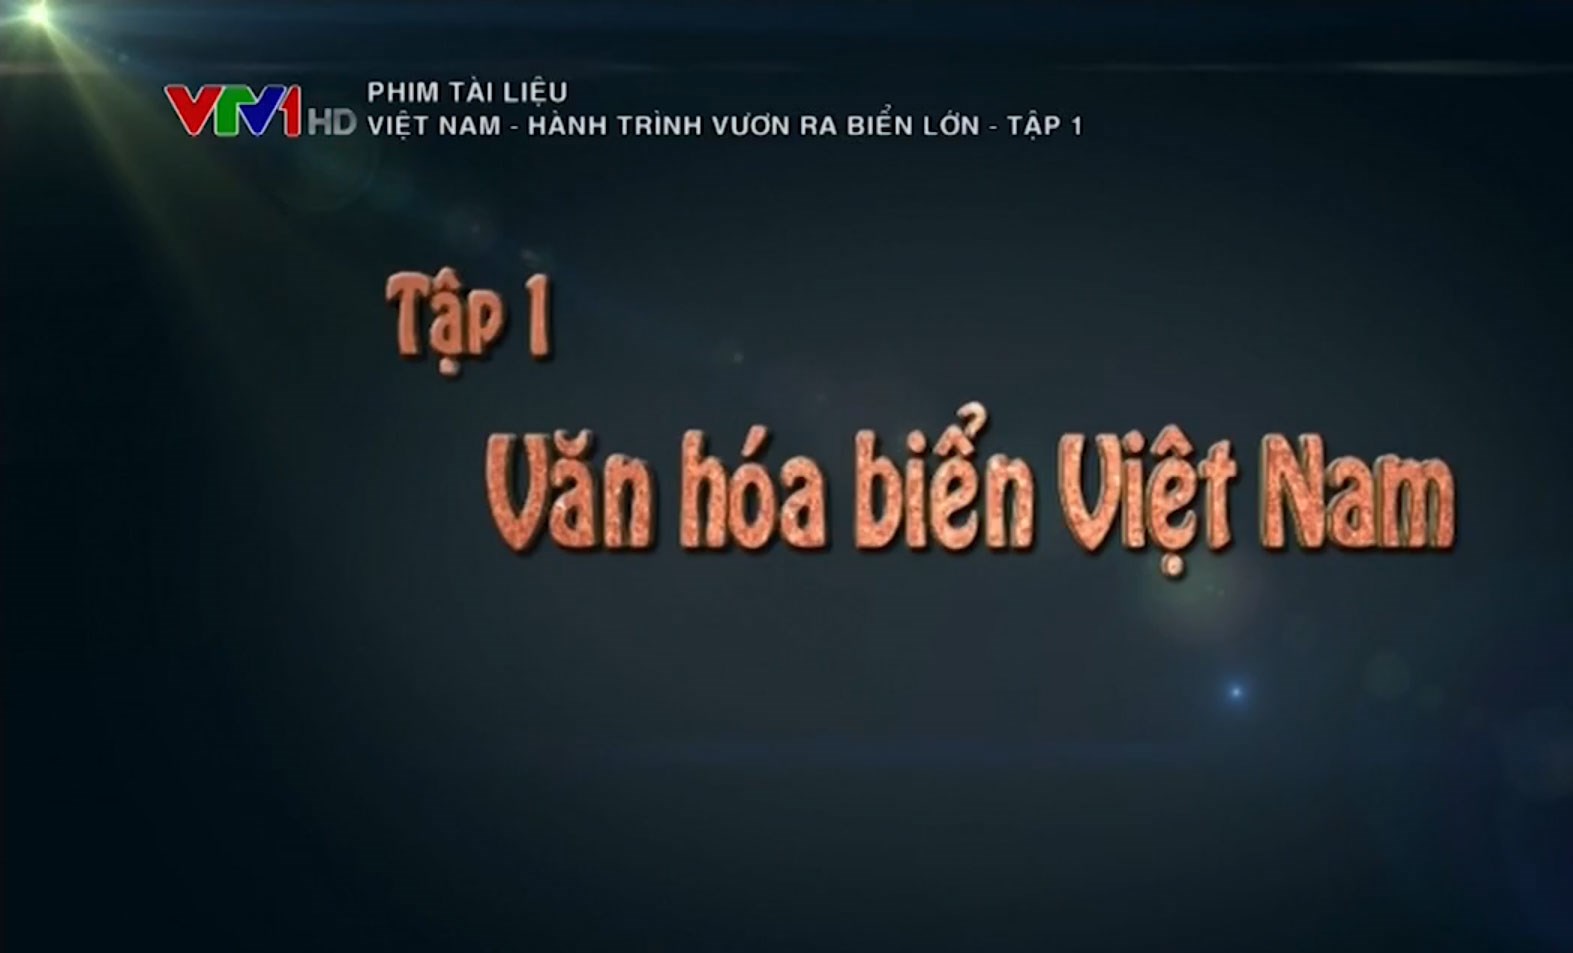 Phim tài liệu: Việt Nam - Hành trình ra biển lớn - Tập 1